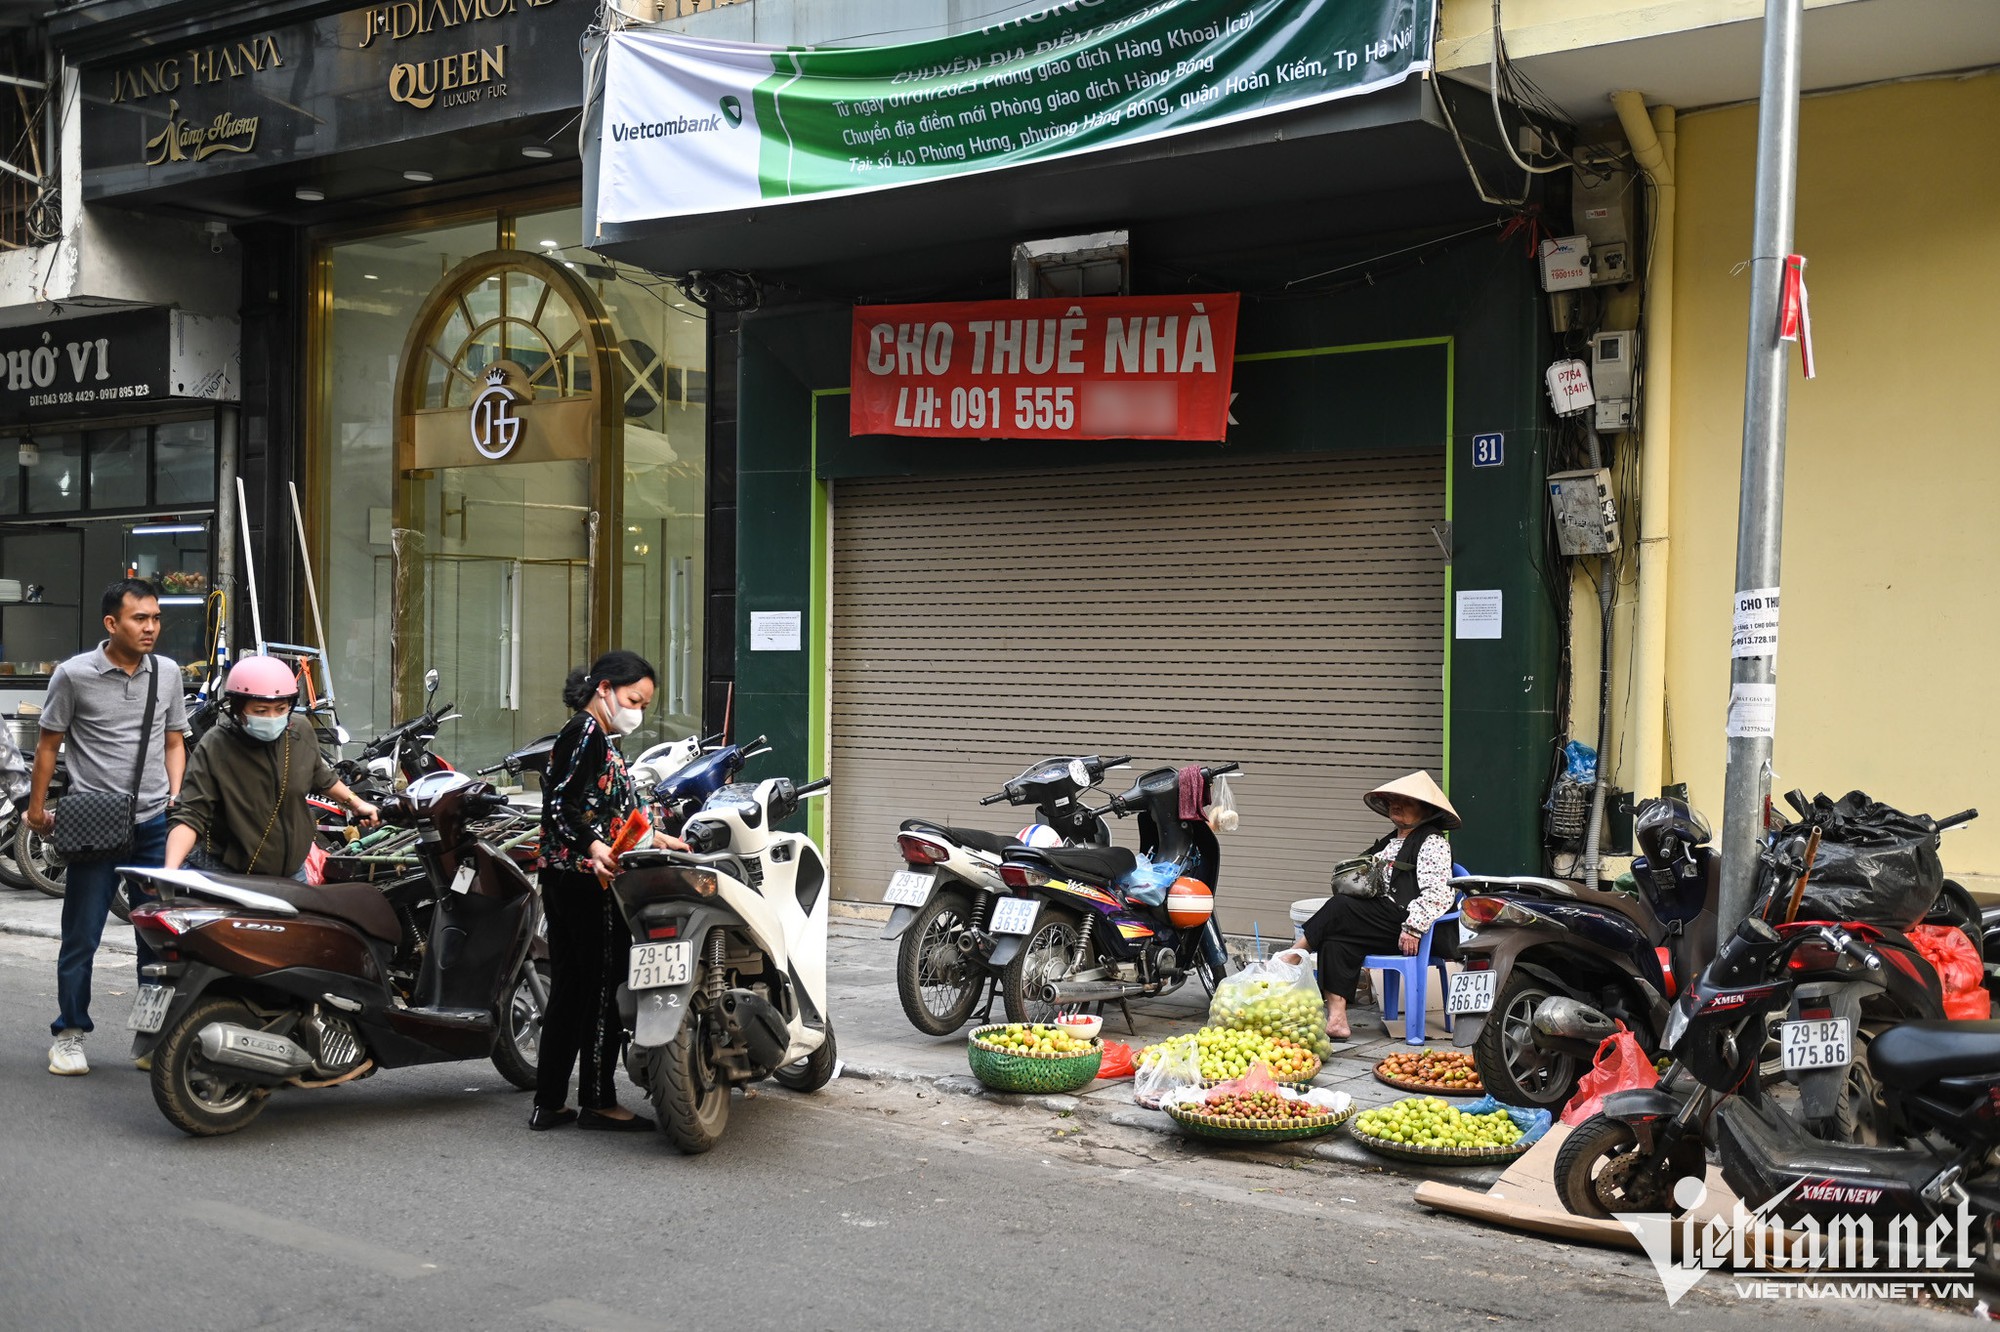 Hàng loạt mặt bằng trung tâm Hà Nội rao vặt tìm khách thuê - Ảnh 6.